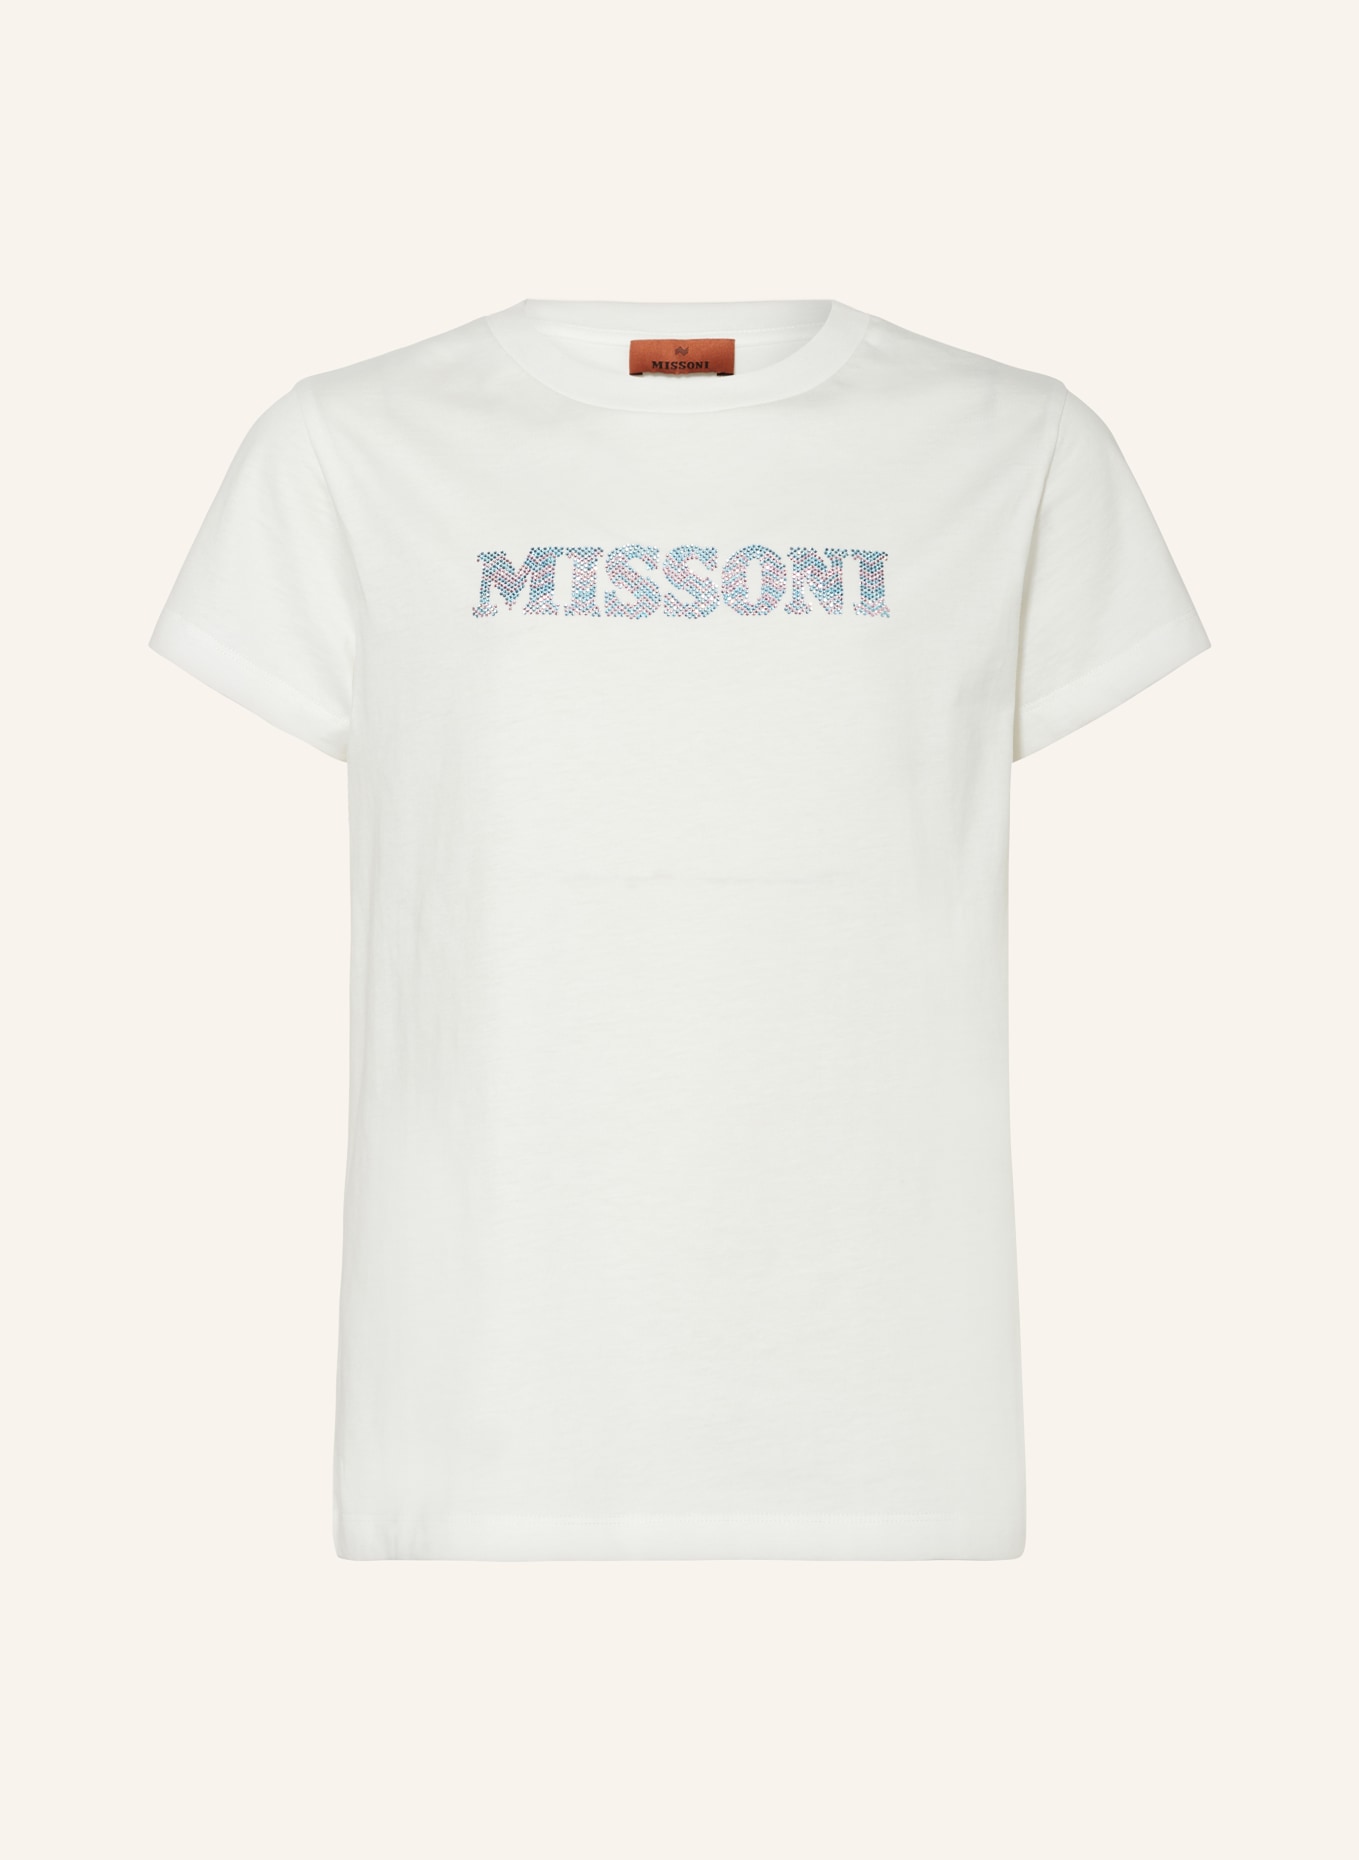 MISSONI T-Shirt, Farbe: WEISS (Bild 1)